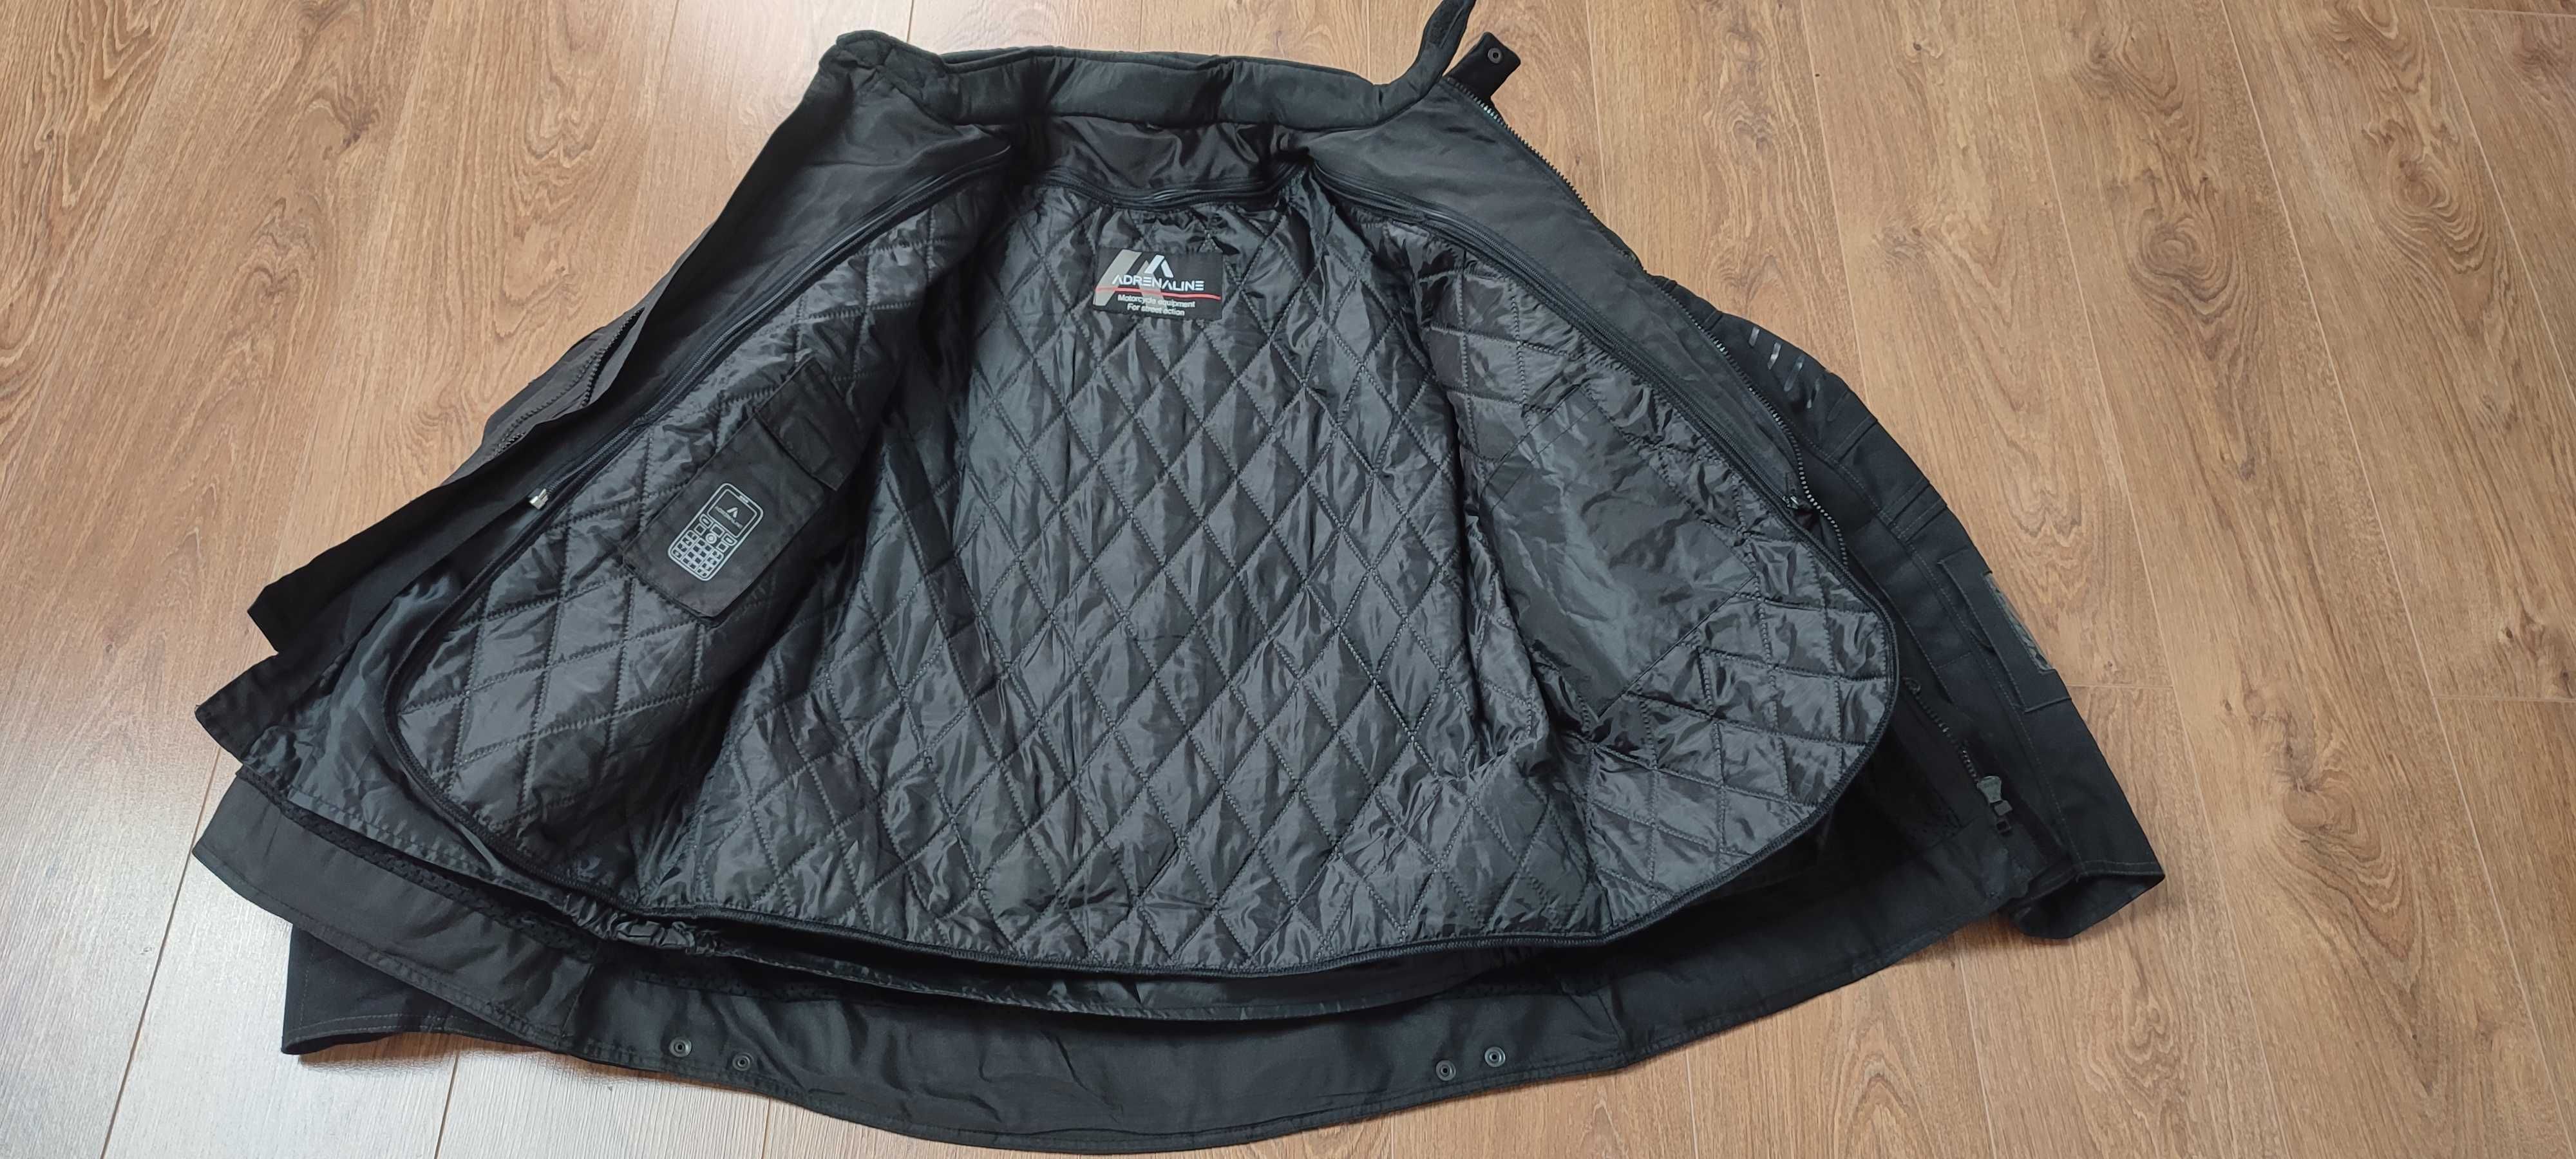 Kurtka i spodnie tekstylne męskie Adrenaline Alaska kolor czarny 3XL